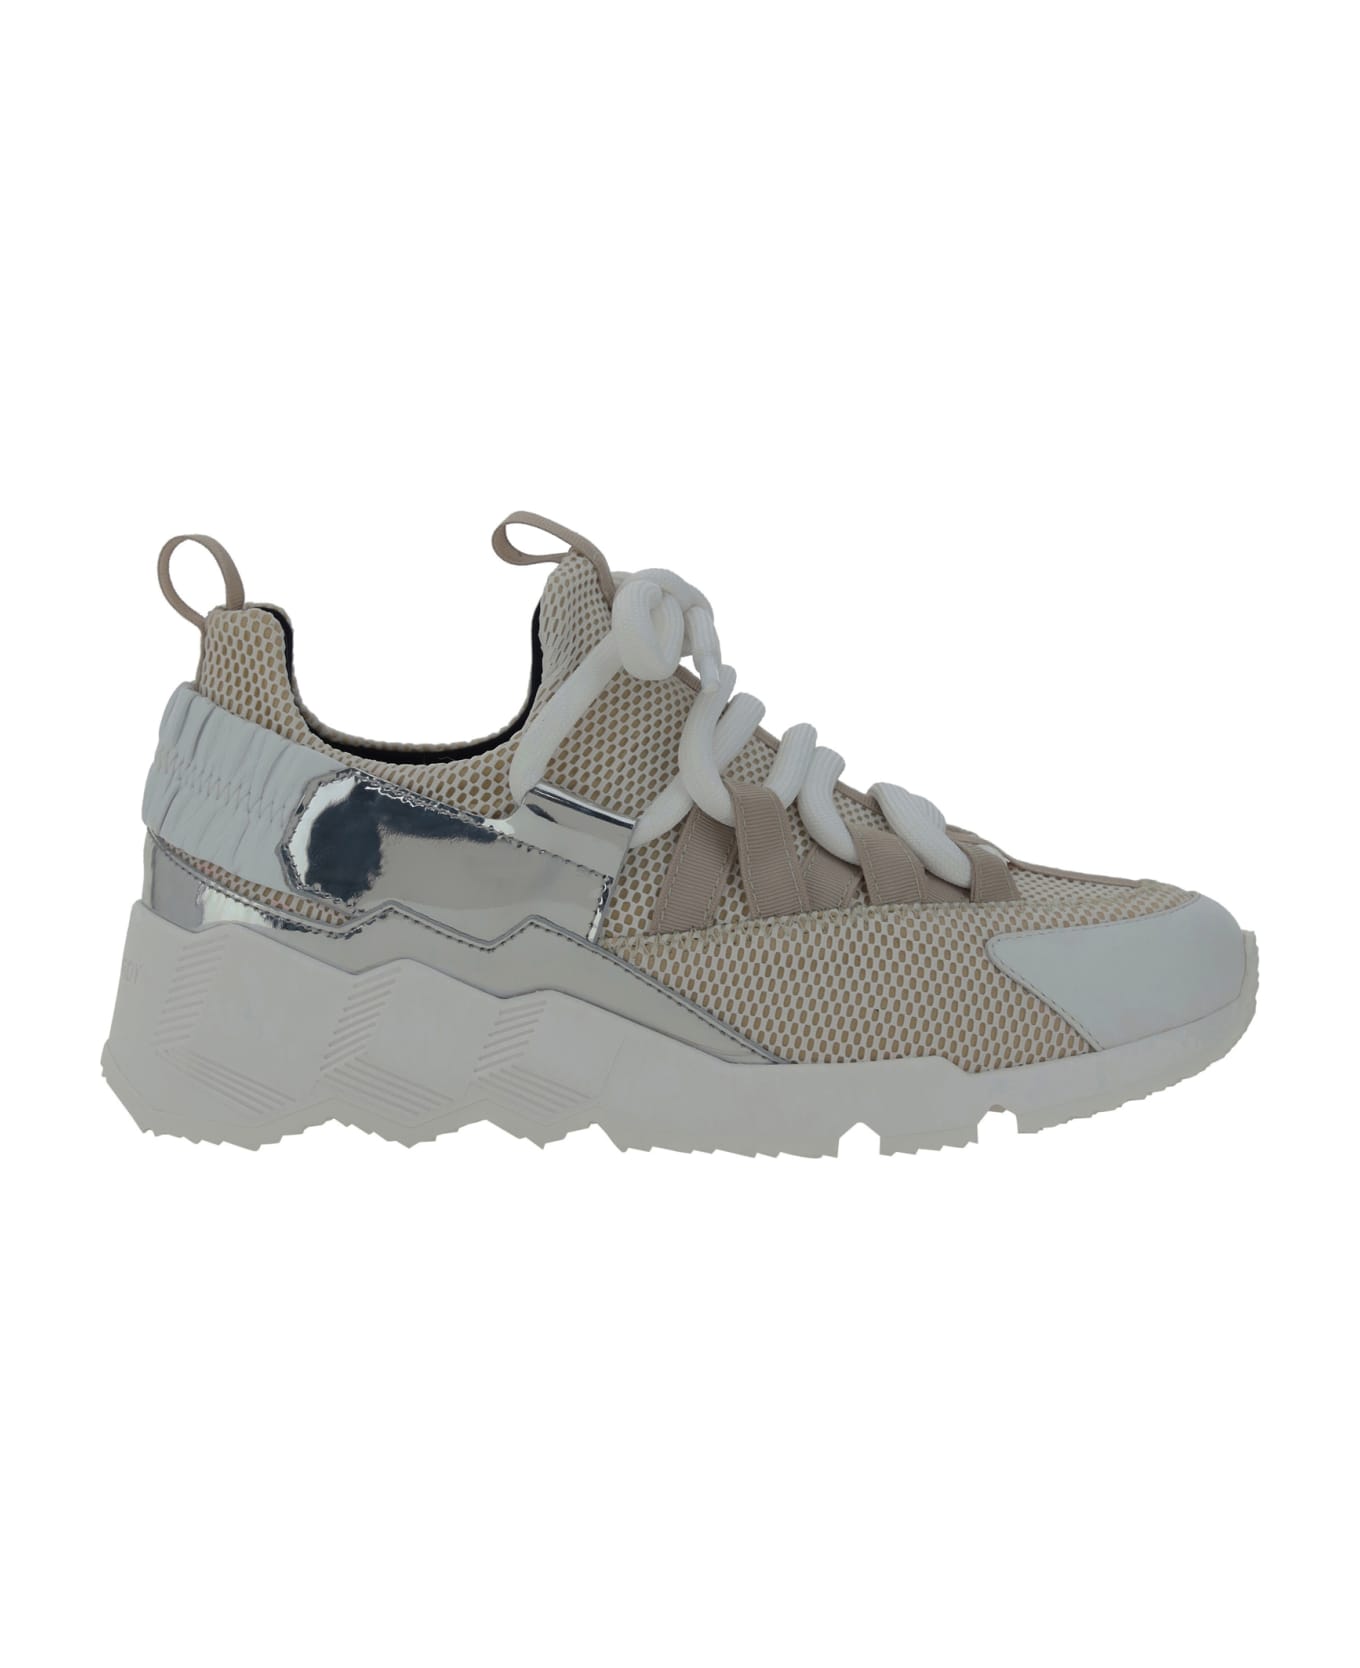 Pierre Hardy Trek Cosmetic Sneakers - White/grey/opale